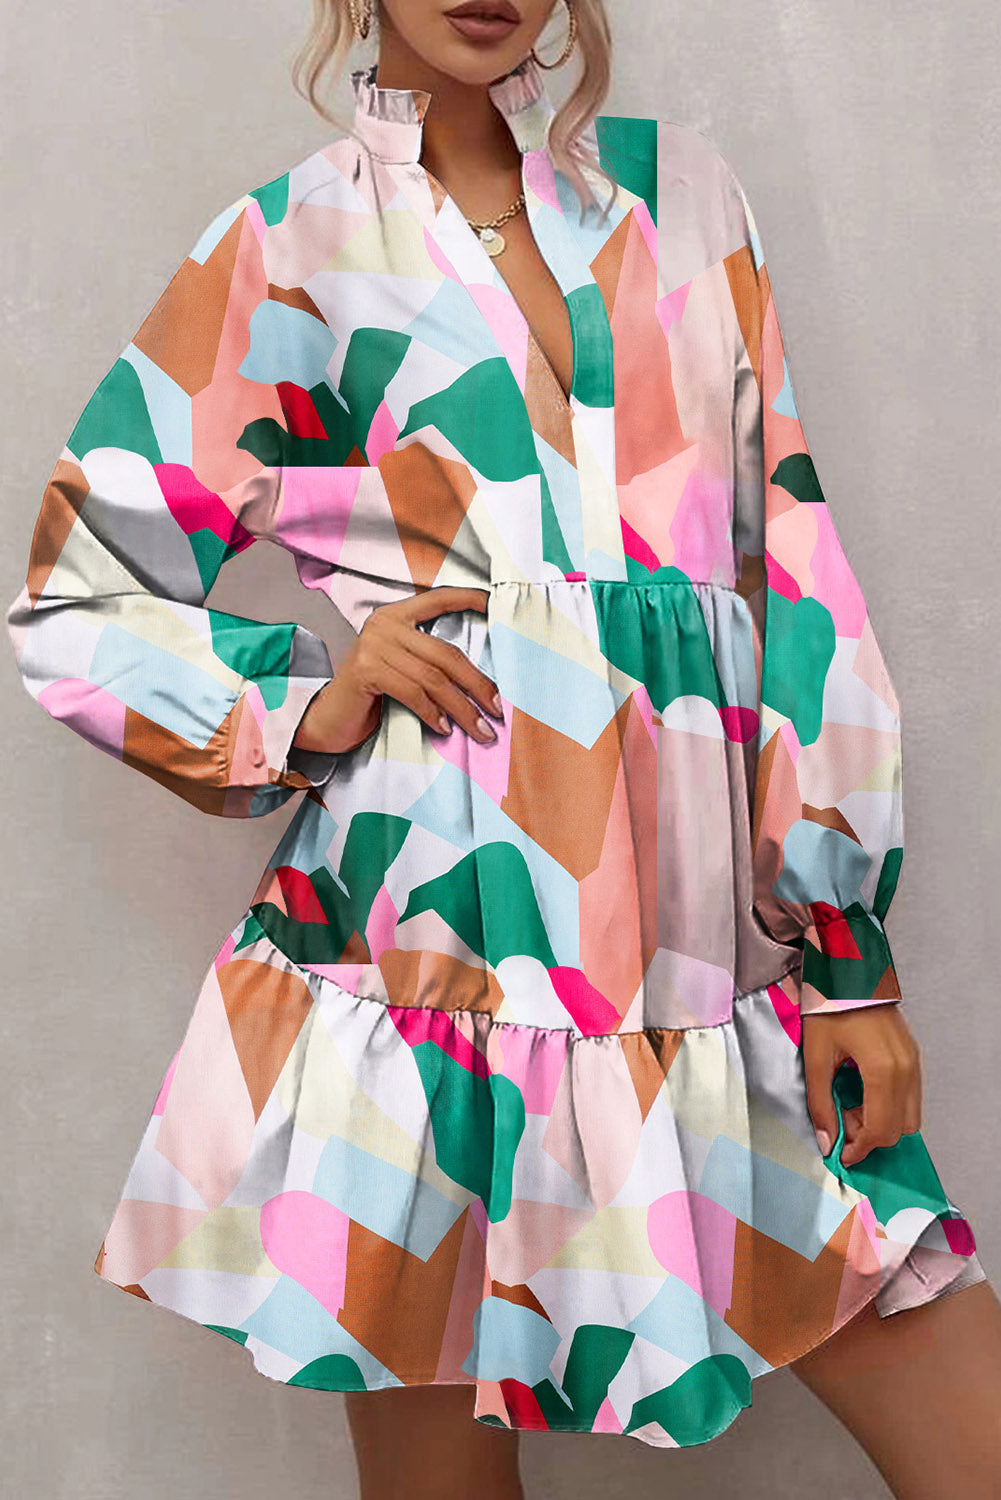 Mehrfarbiges Kleid mit geometrischem Muster, Stehkragen, Ballonärmeln und Rüschen